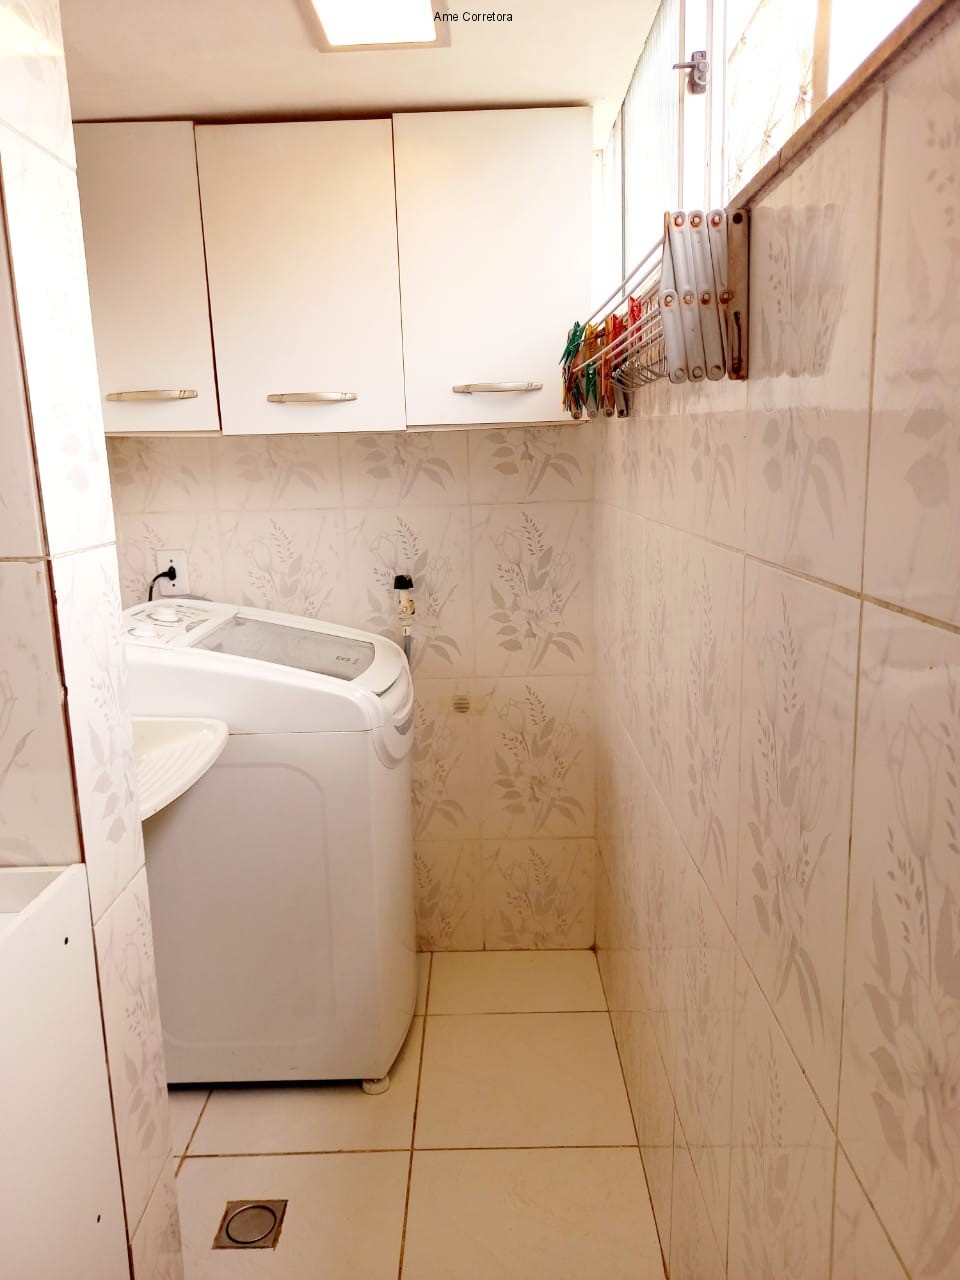 FOTO 19 - Apartamento 3 quartos à venda Rio de Janeiro,RJ - R$ 175.000 - AP00442 - 20